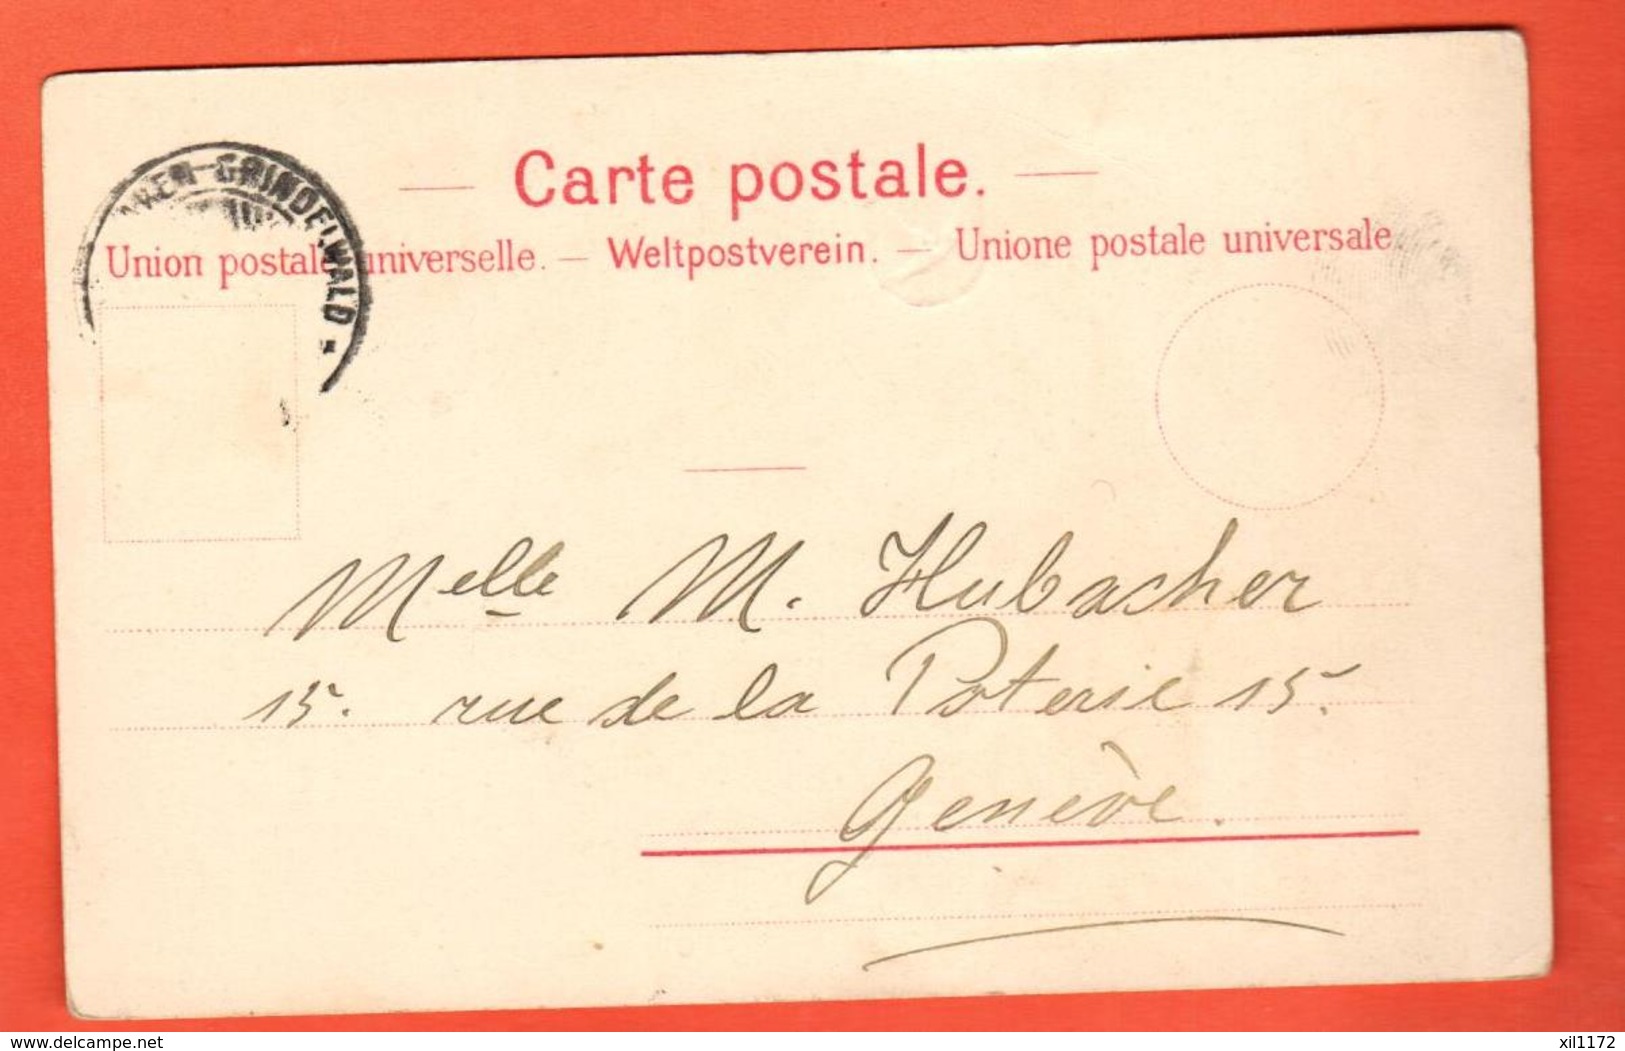 NO-23 Ersten Briefmarken Der Schweiz. Basler-Taube Relief. Colombe De Bâle Gaufrée. Pioneer. Gelaufen, Briefmarke Fehlt - Basel